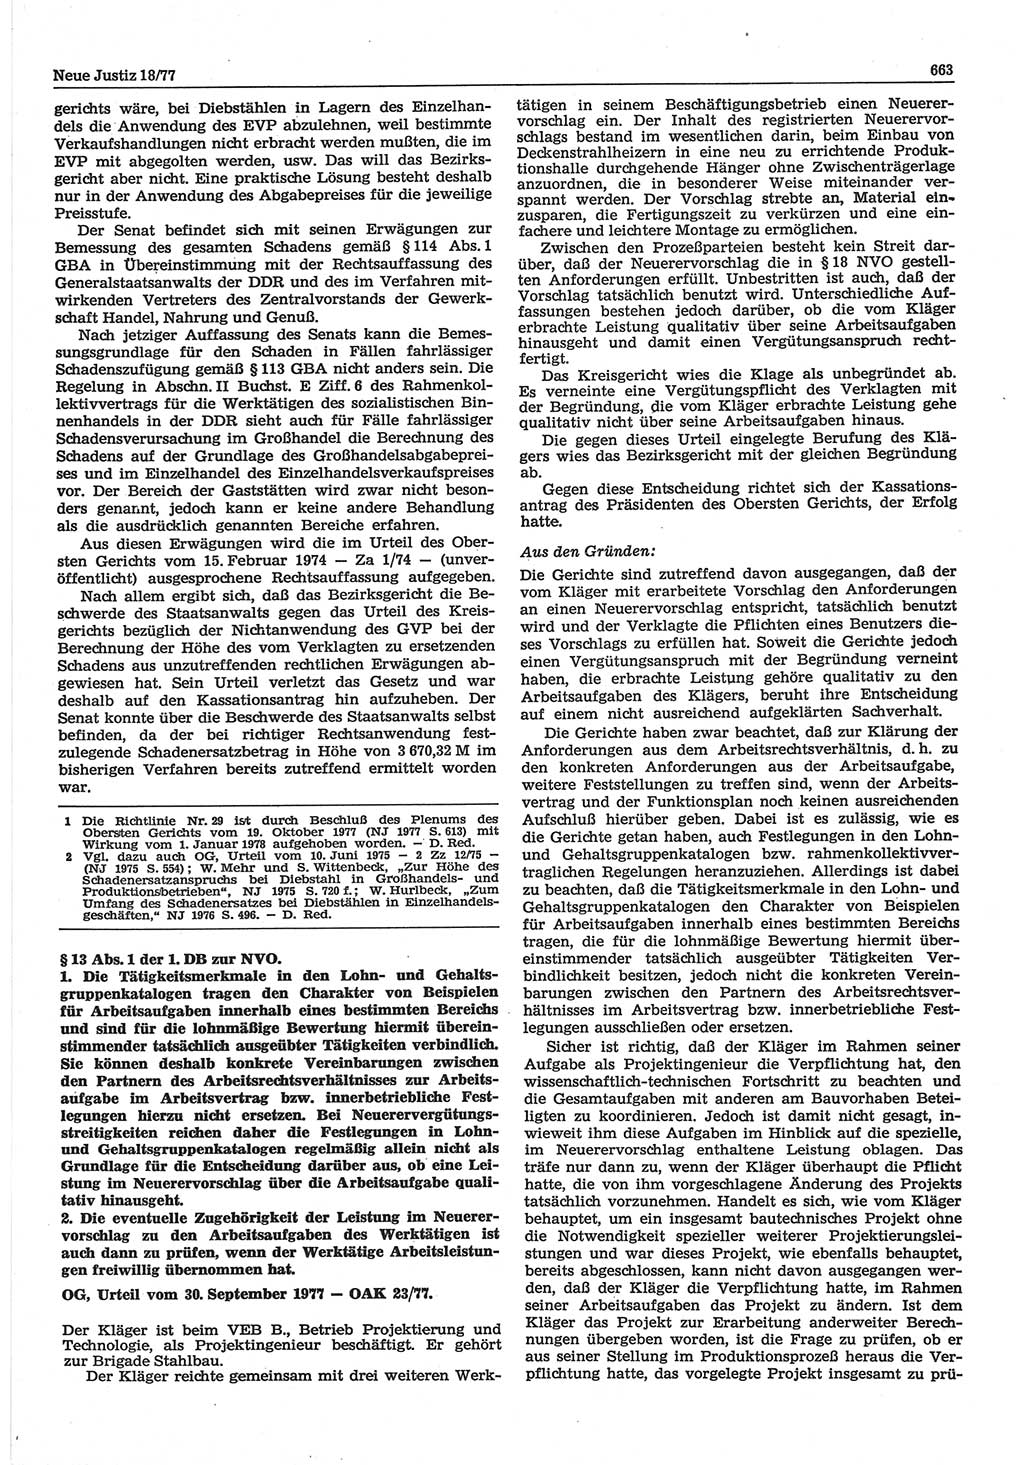 Neue Justiz (NJ), Zeitschrift für Recht und Rechtswissenschaft-Zeitschrift, sozialistisches Recht und Gesetzlichkeit, 31. Jahrgang 1977, Seite 663 (NJ DDR 1977, S. 663)